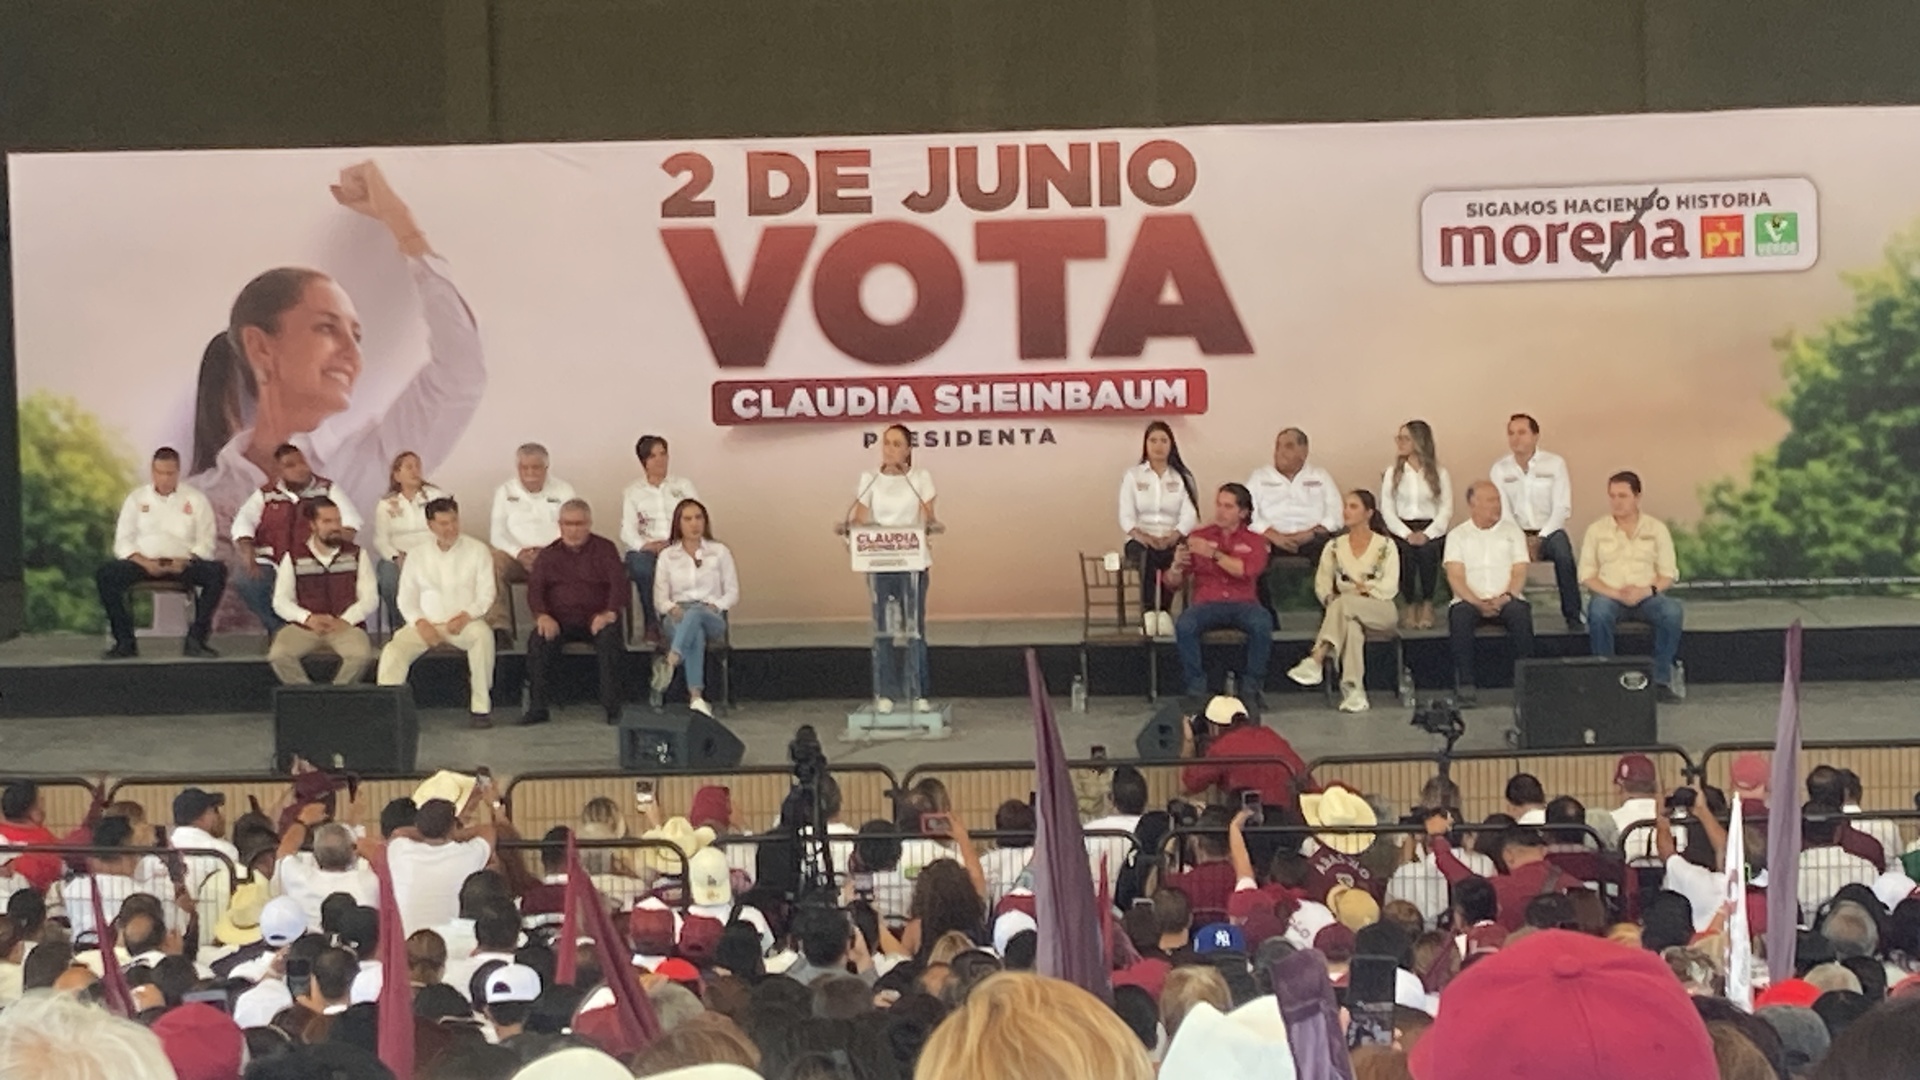 Cierre de campaña de Claudia Sheinbaum Pardo, candidata a la Presidencia de México por la Coalición “Sigamos Haciendo Historia” (Morena-PT-PVEM), en Saltillo. (ISABEL AMPUDIA)